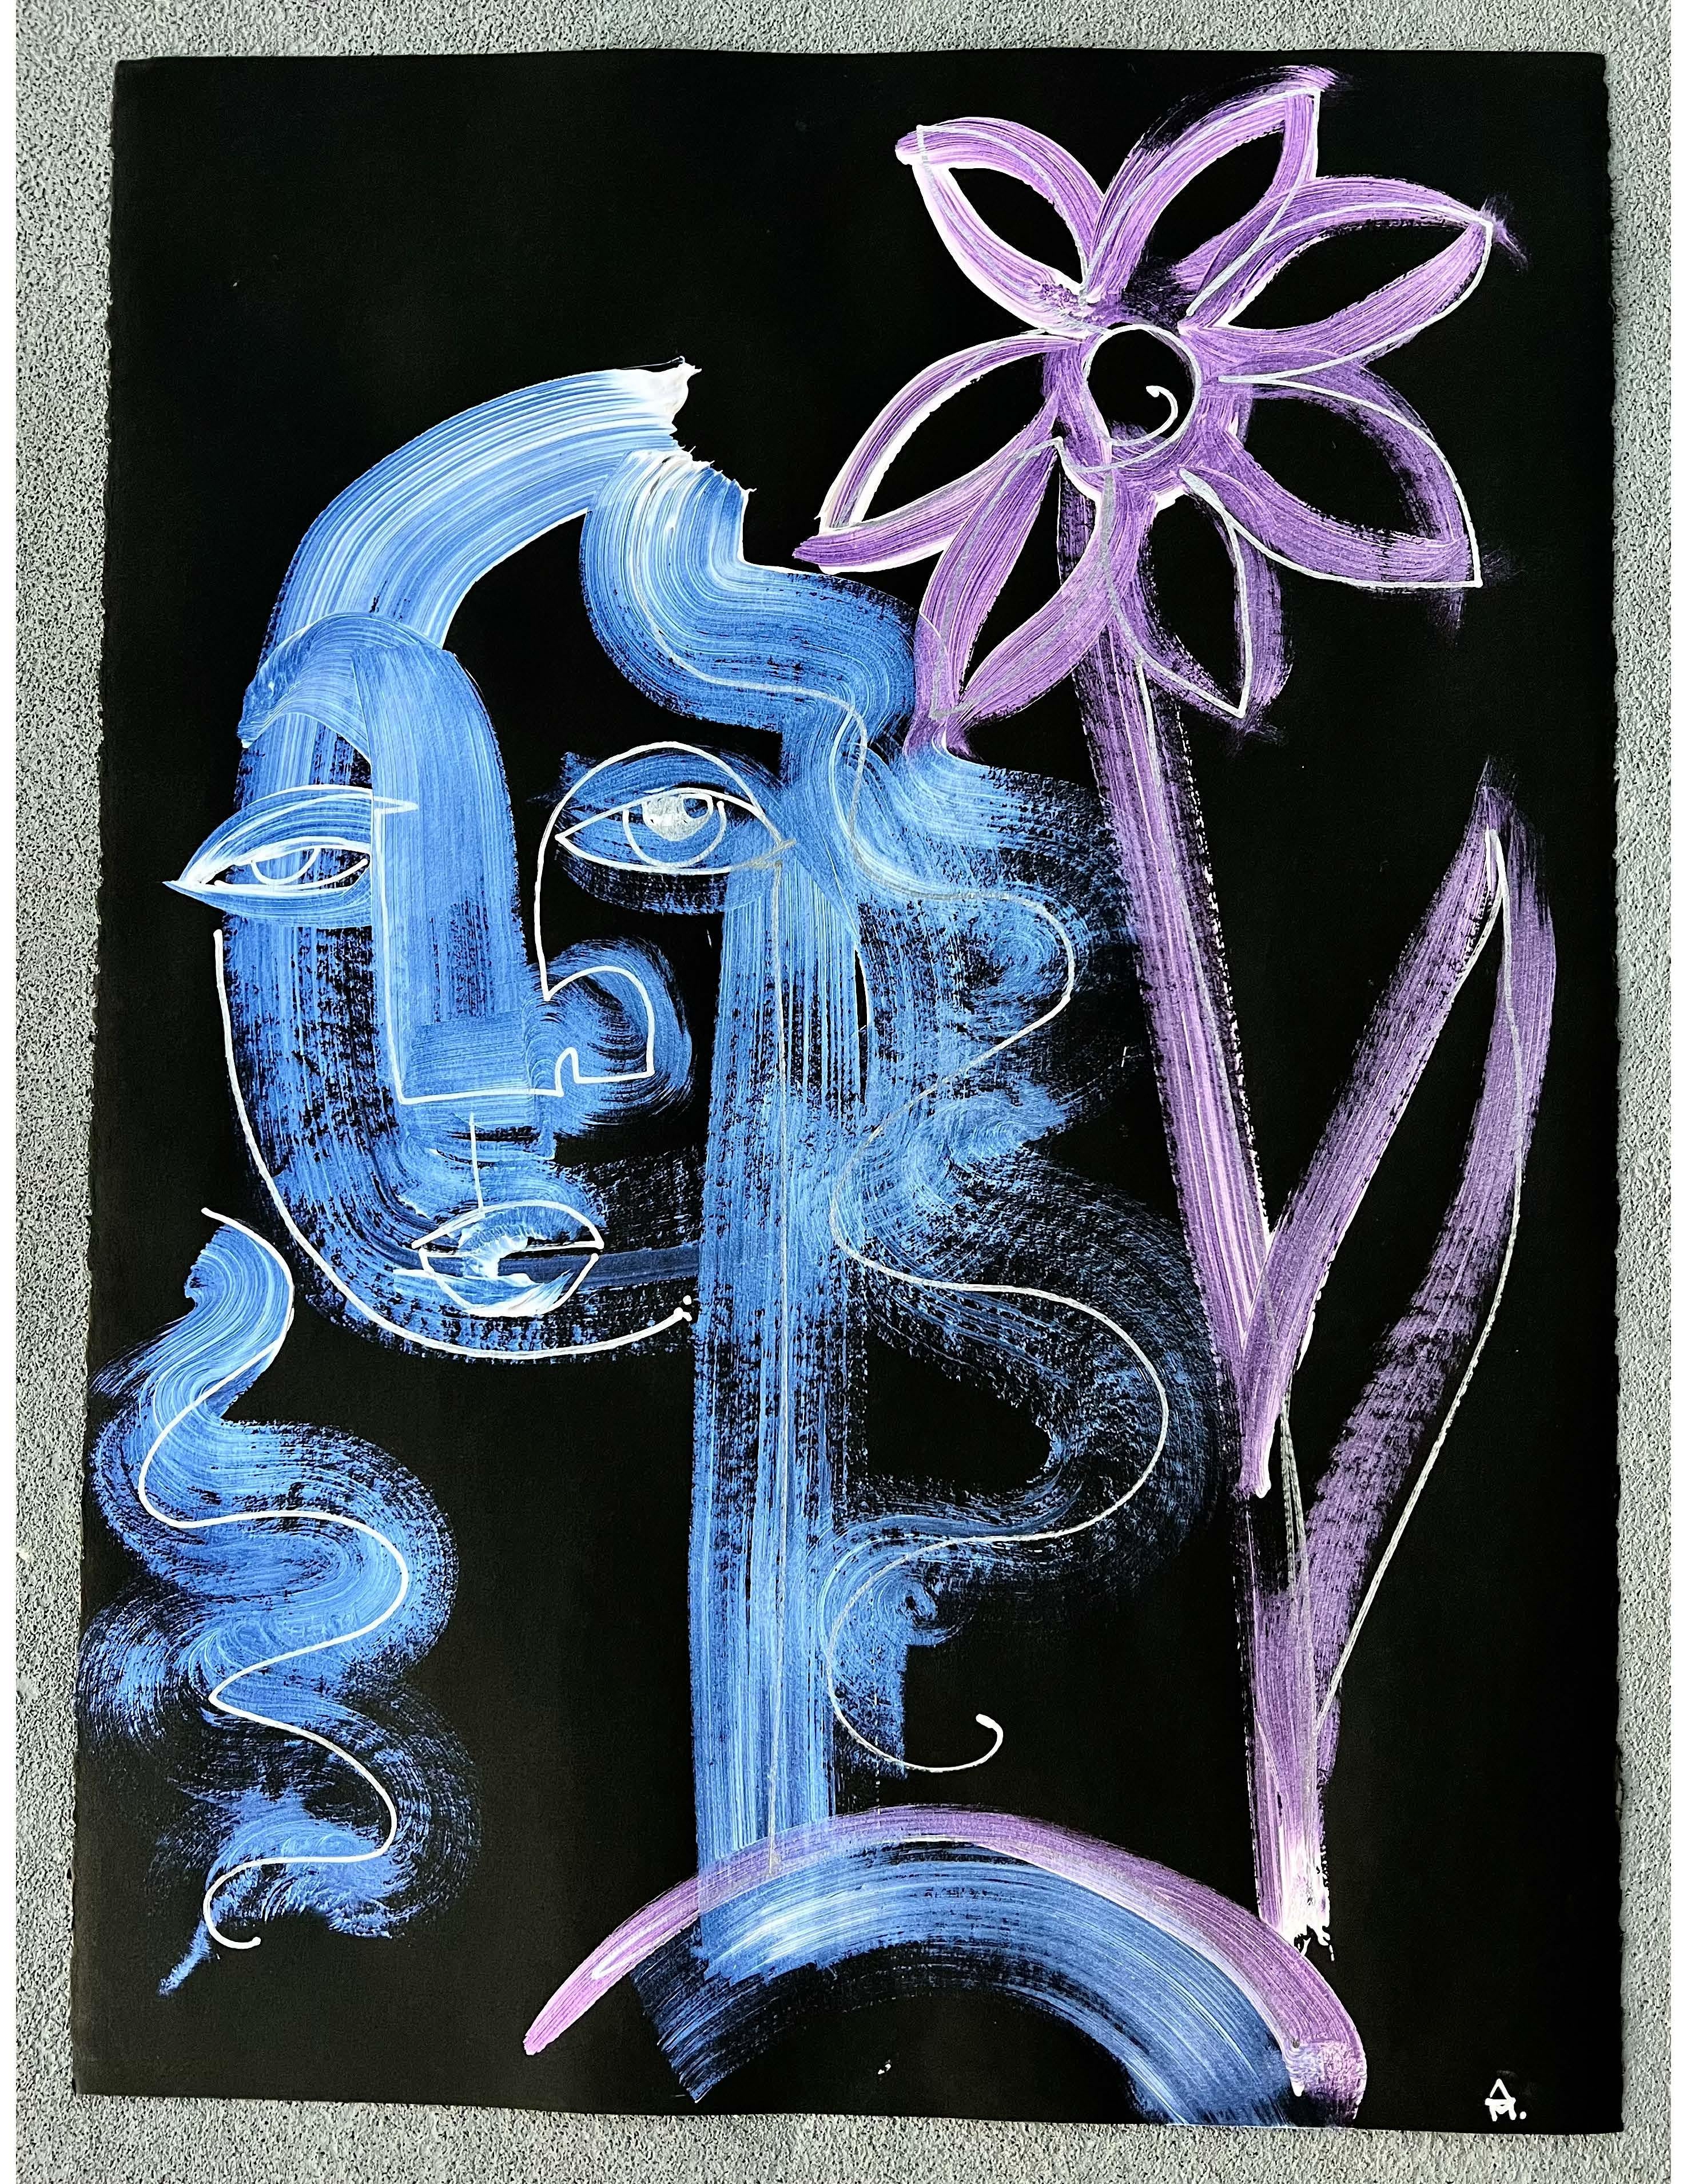 Portrait bleu, blanc et violet d'une figure féminine et d'une fleur.  La peinture interférentielle le fait vraiment ressortir à la lumière.  Sur papier Stonehenge d'archives noir.  Signé par l'artiste.
